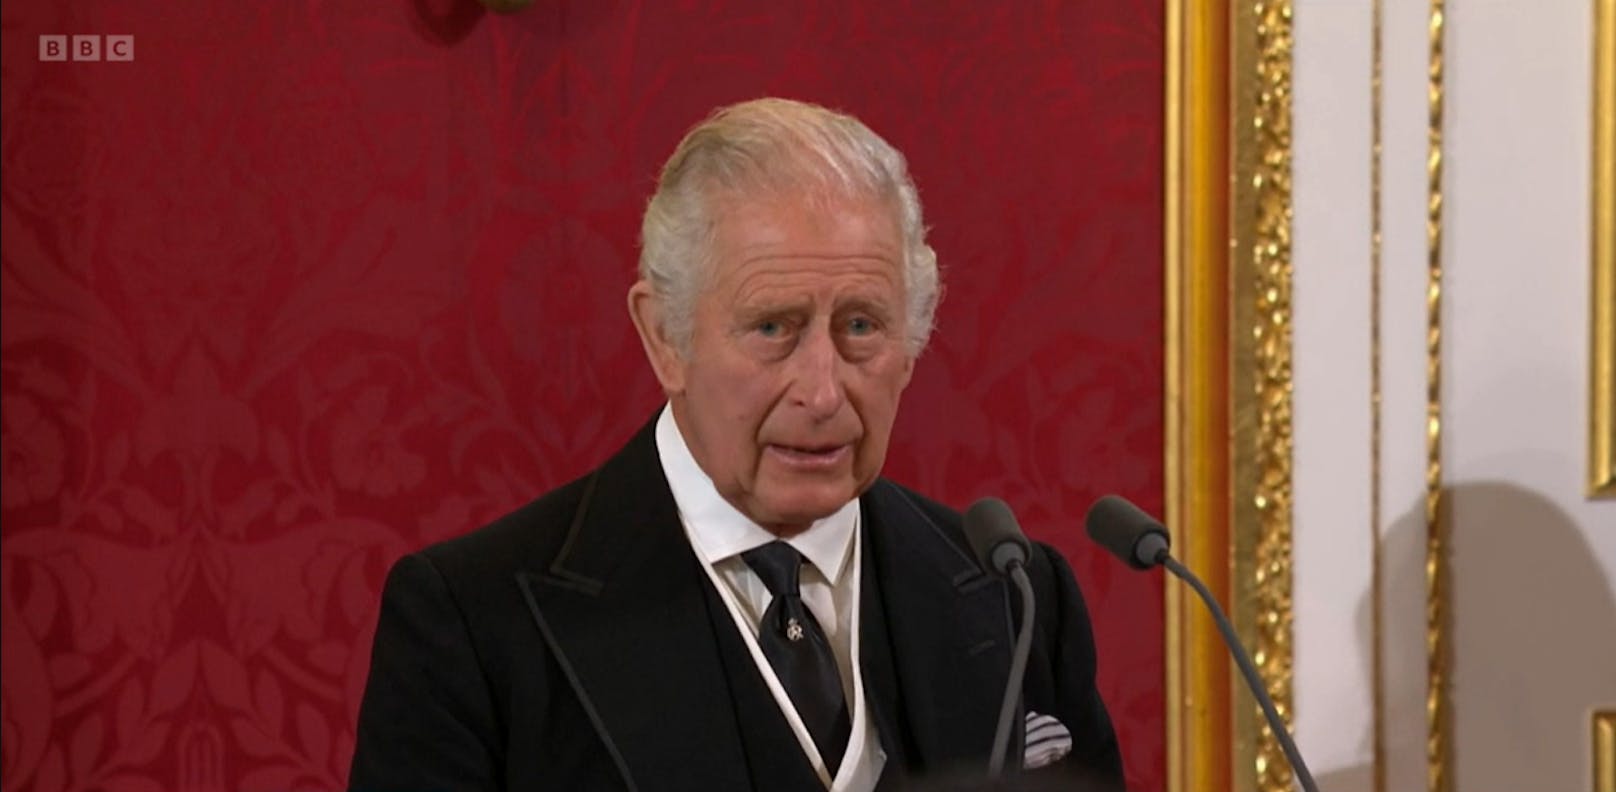 Der König spricht in seiner Rede über seine verstorbene Mutter, Queen Elizabeth II. und bedankt sich bei dem Volk für die Anteilnahme.